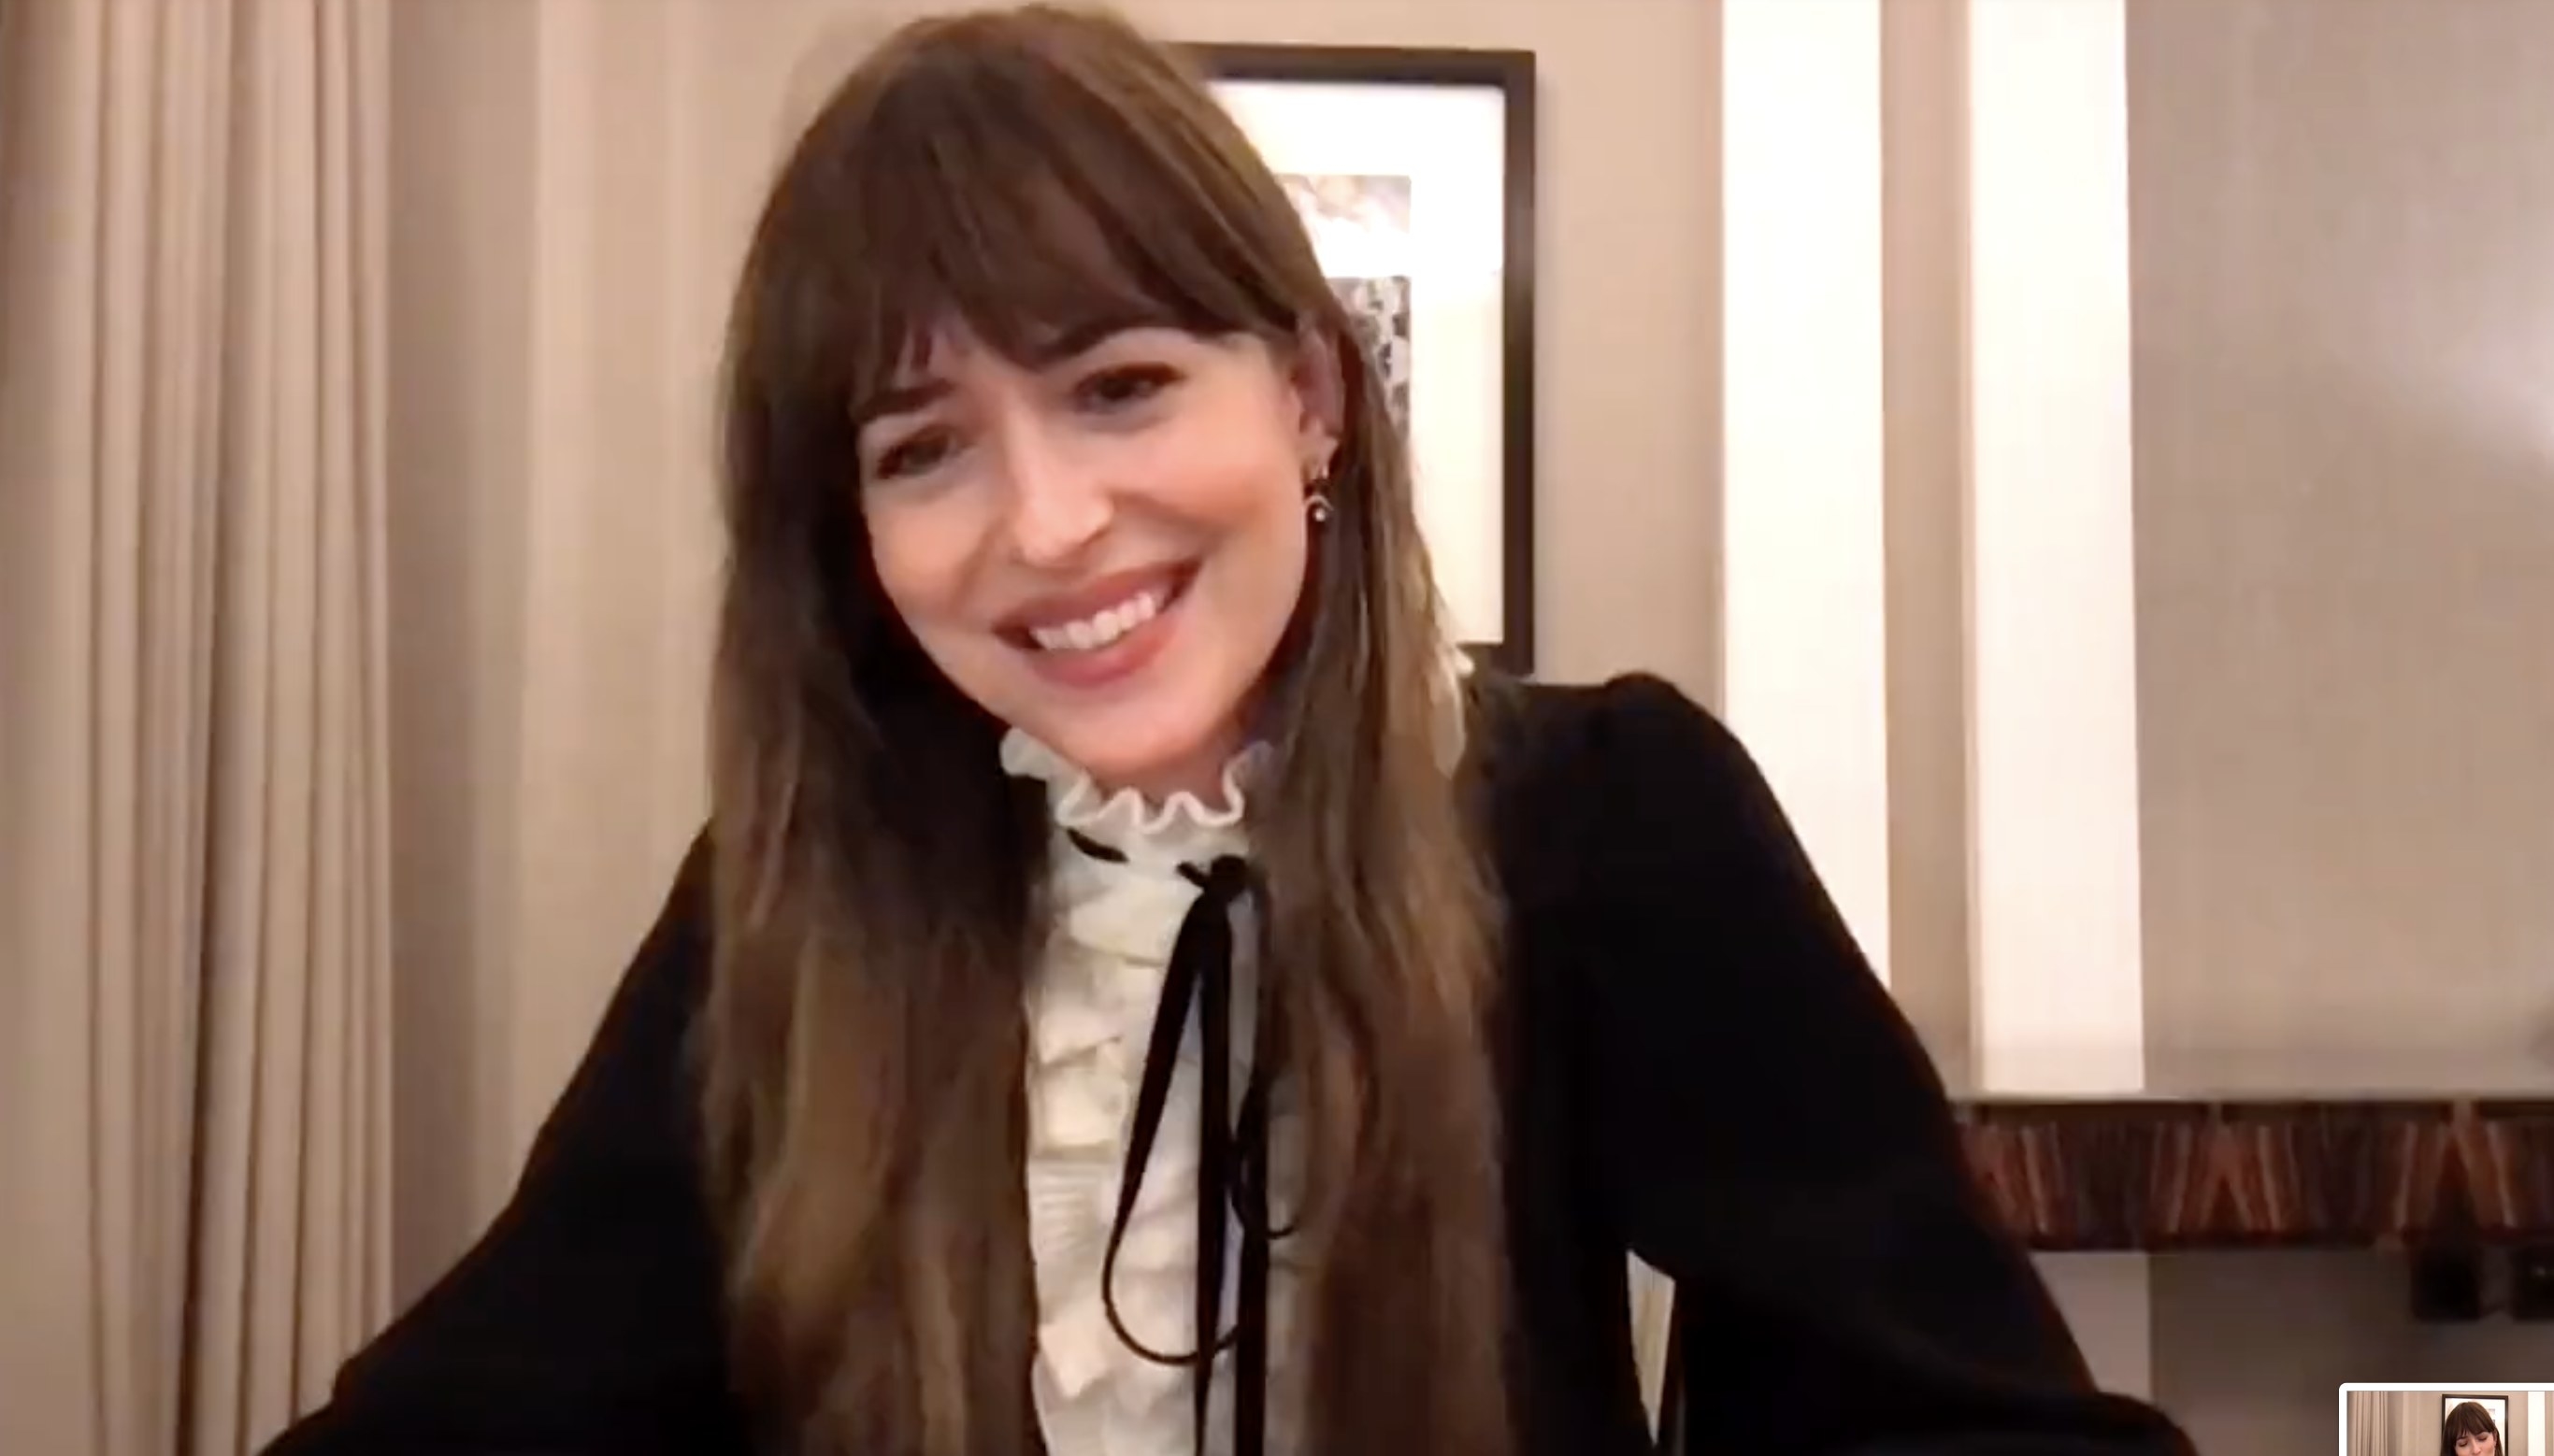 Dakota smiles during the interview